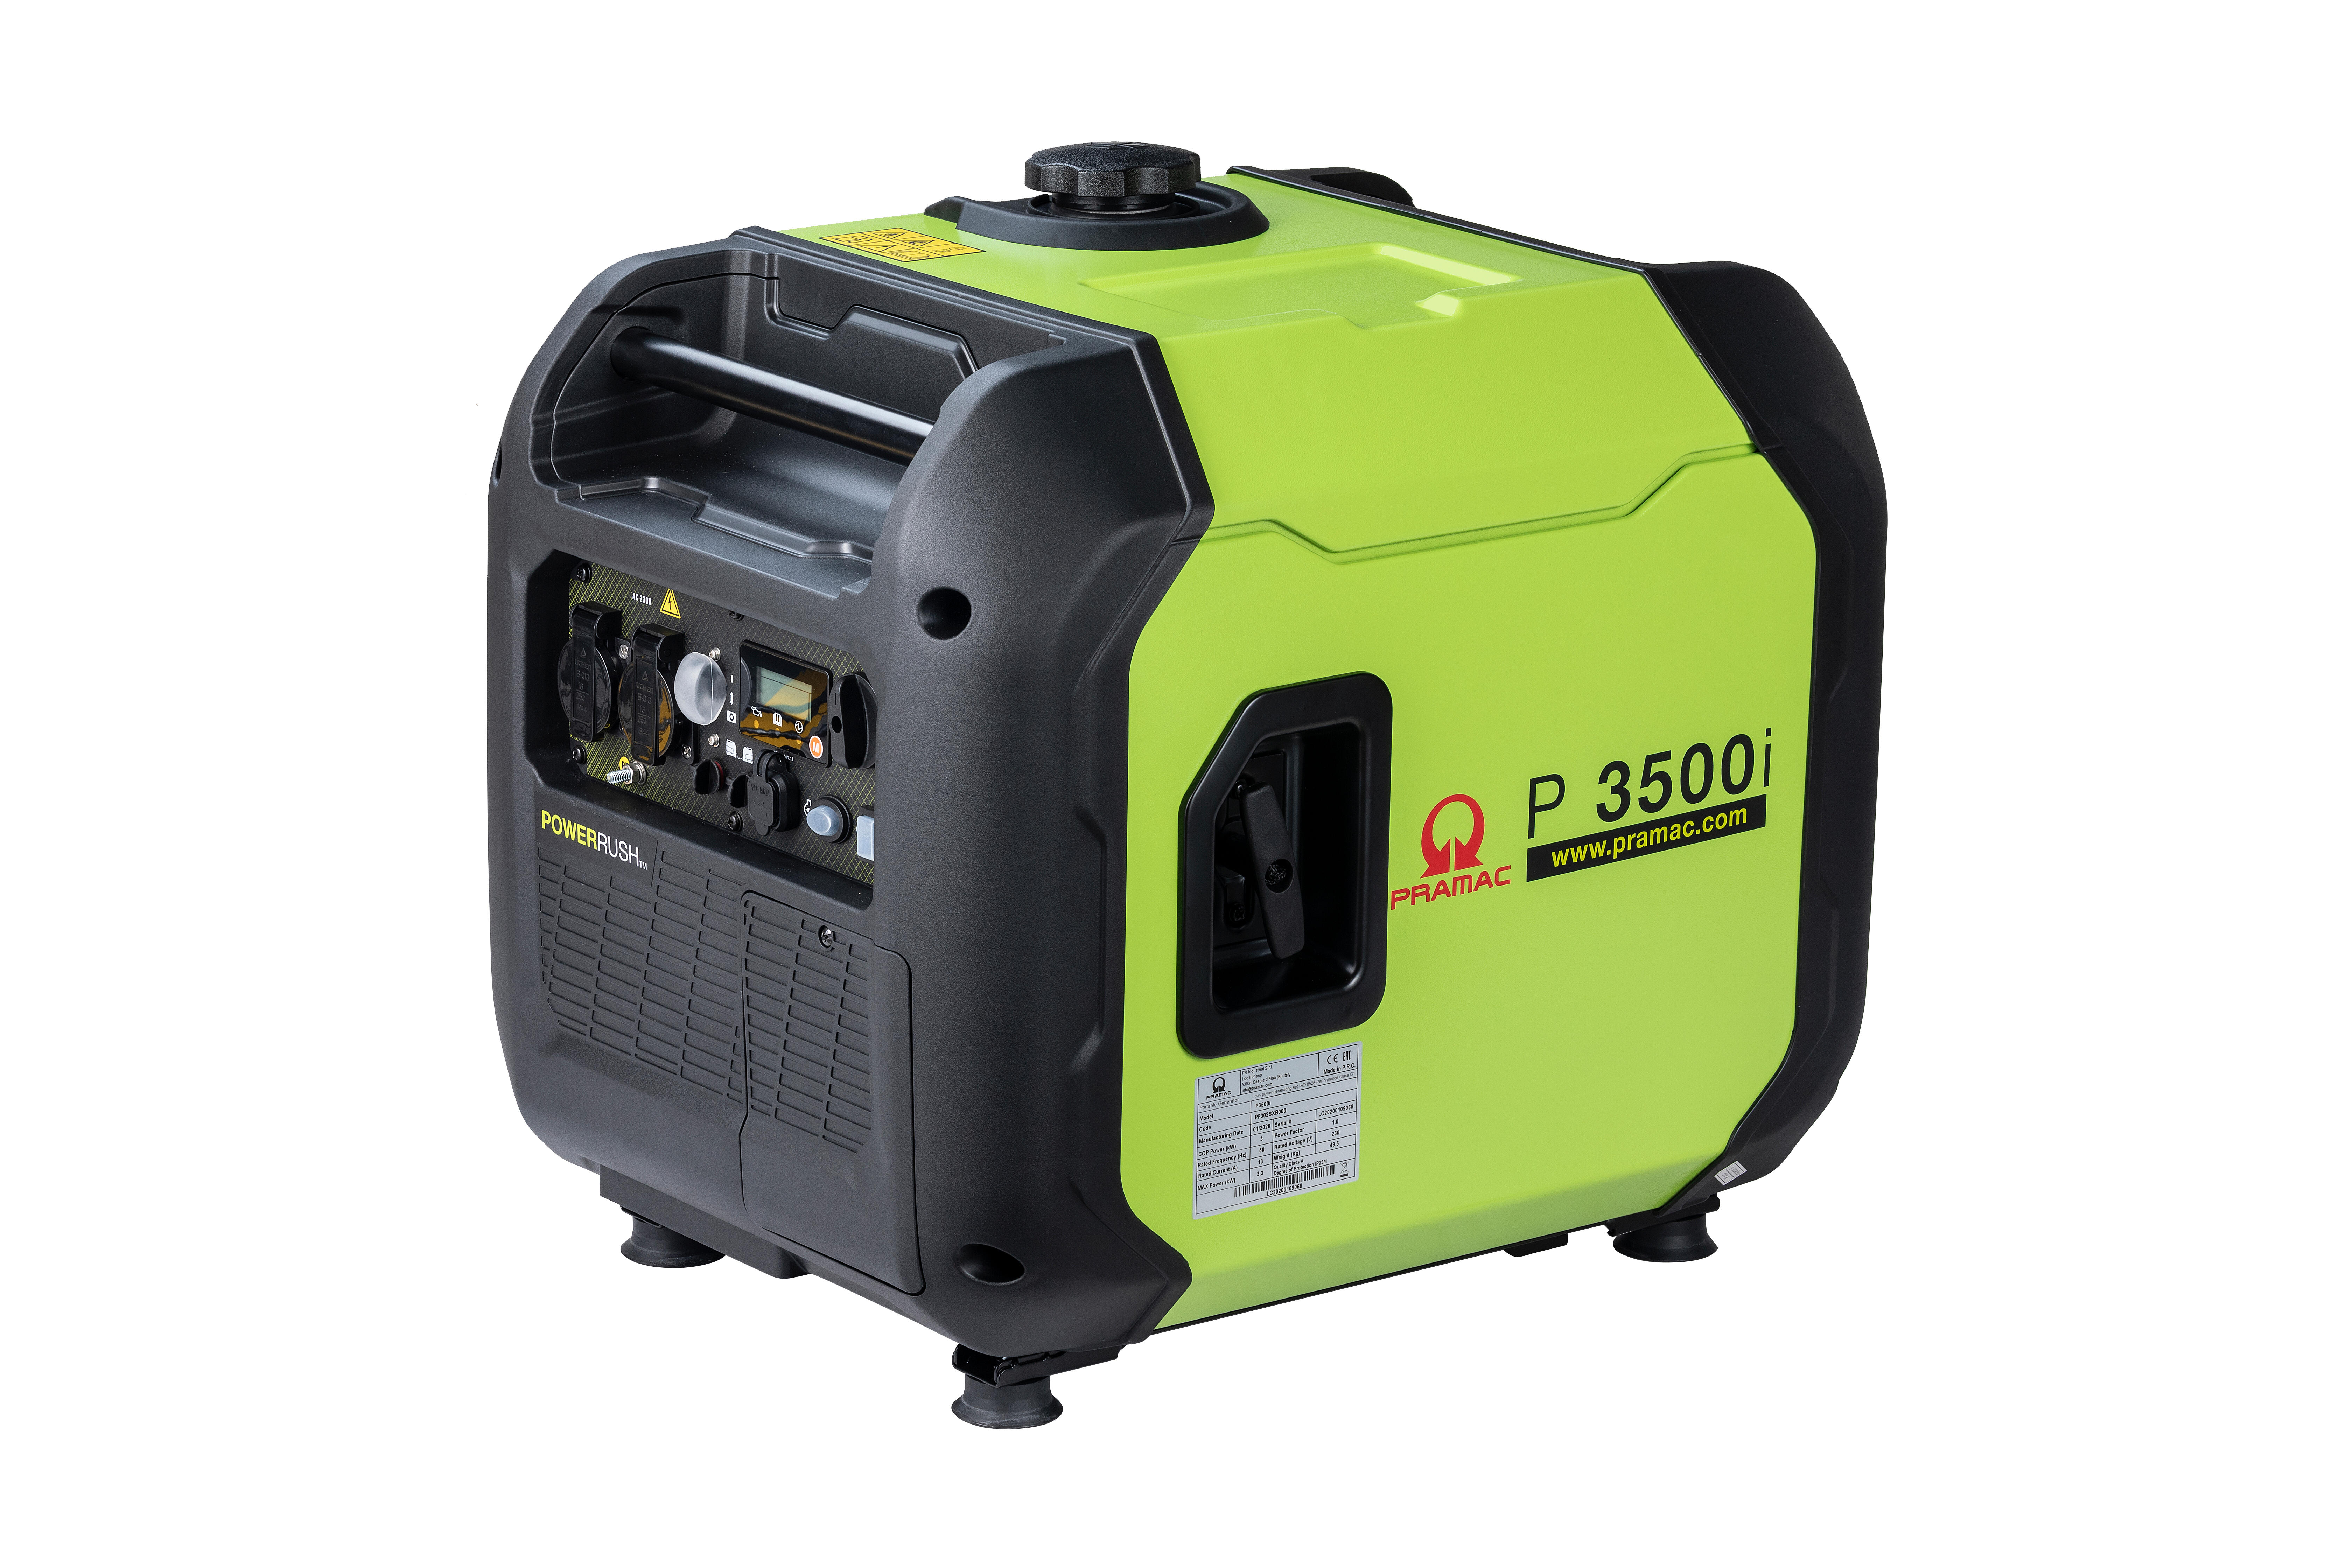 Generador inverter pramac p3500i gasolina de 3000 w